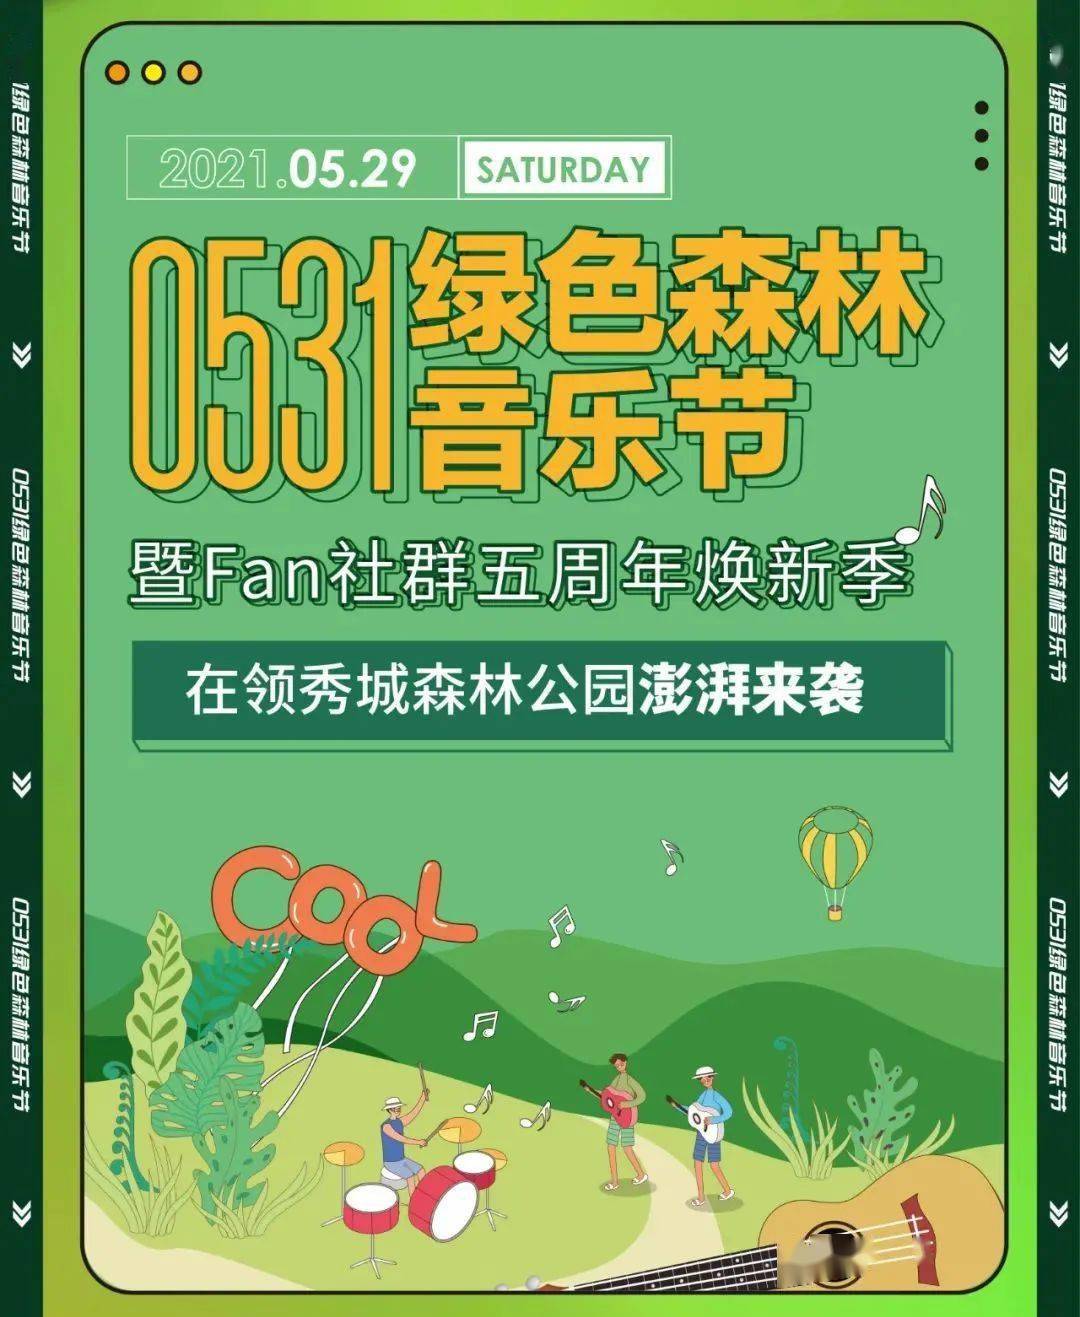 盘点| 上海广播节,绿色森林音乐节,"邮票里的党史"……广播活动焕新季